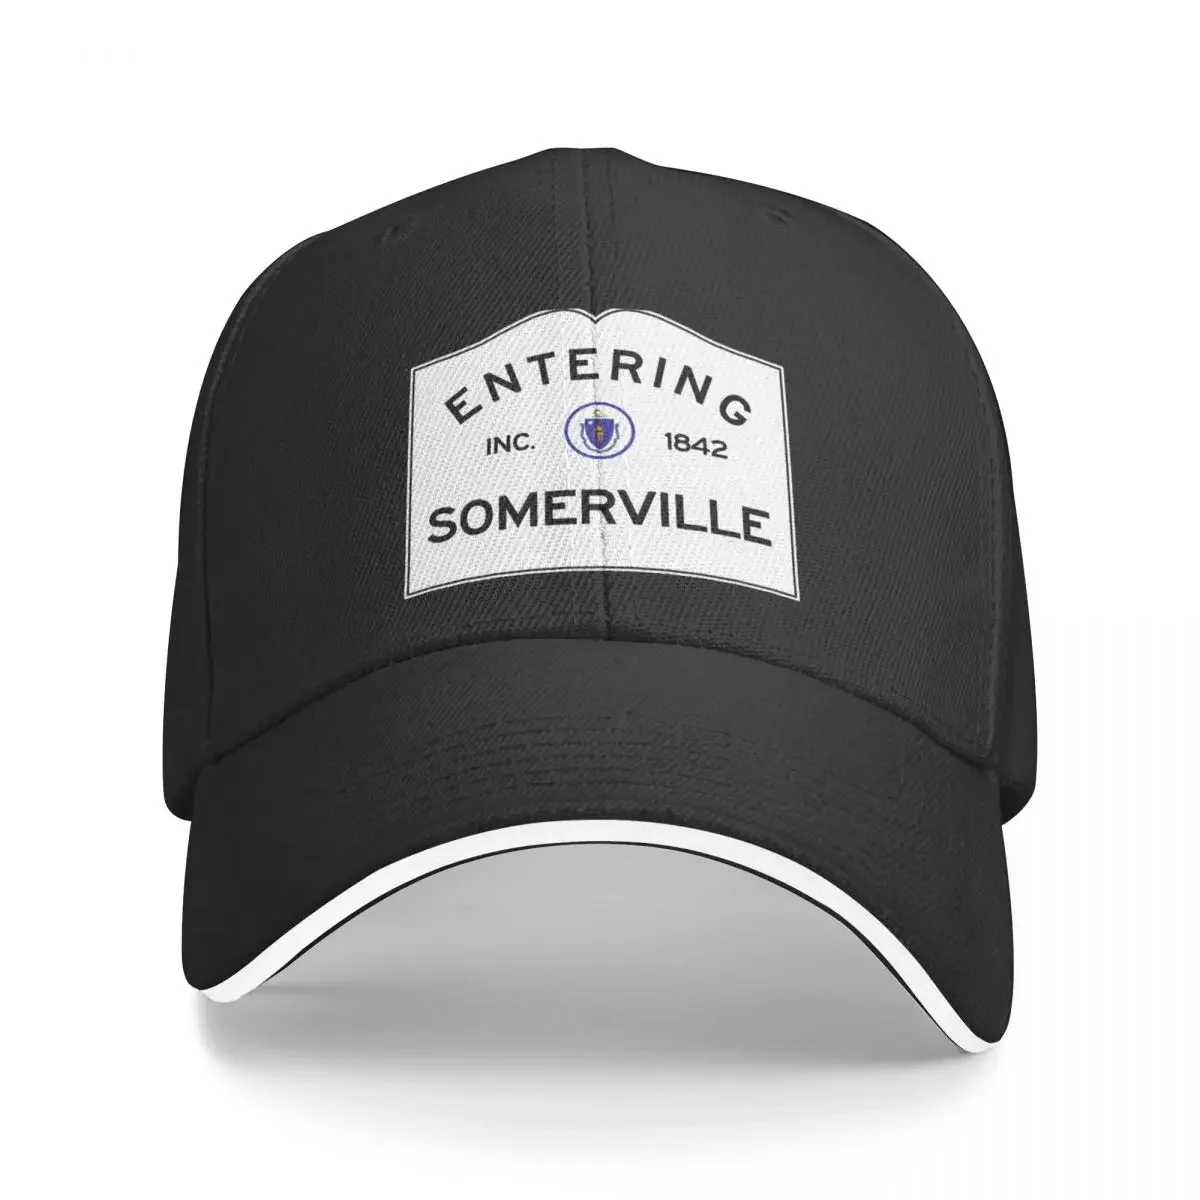 

Entering Somerville - Commonwealth of Massachusetts Road Sign Baseball Cap Anime Hat Golf Cap Mens Caps Women's